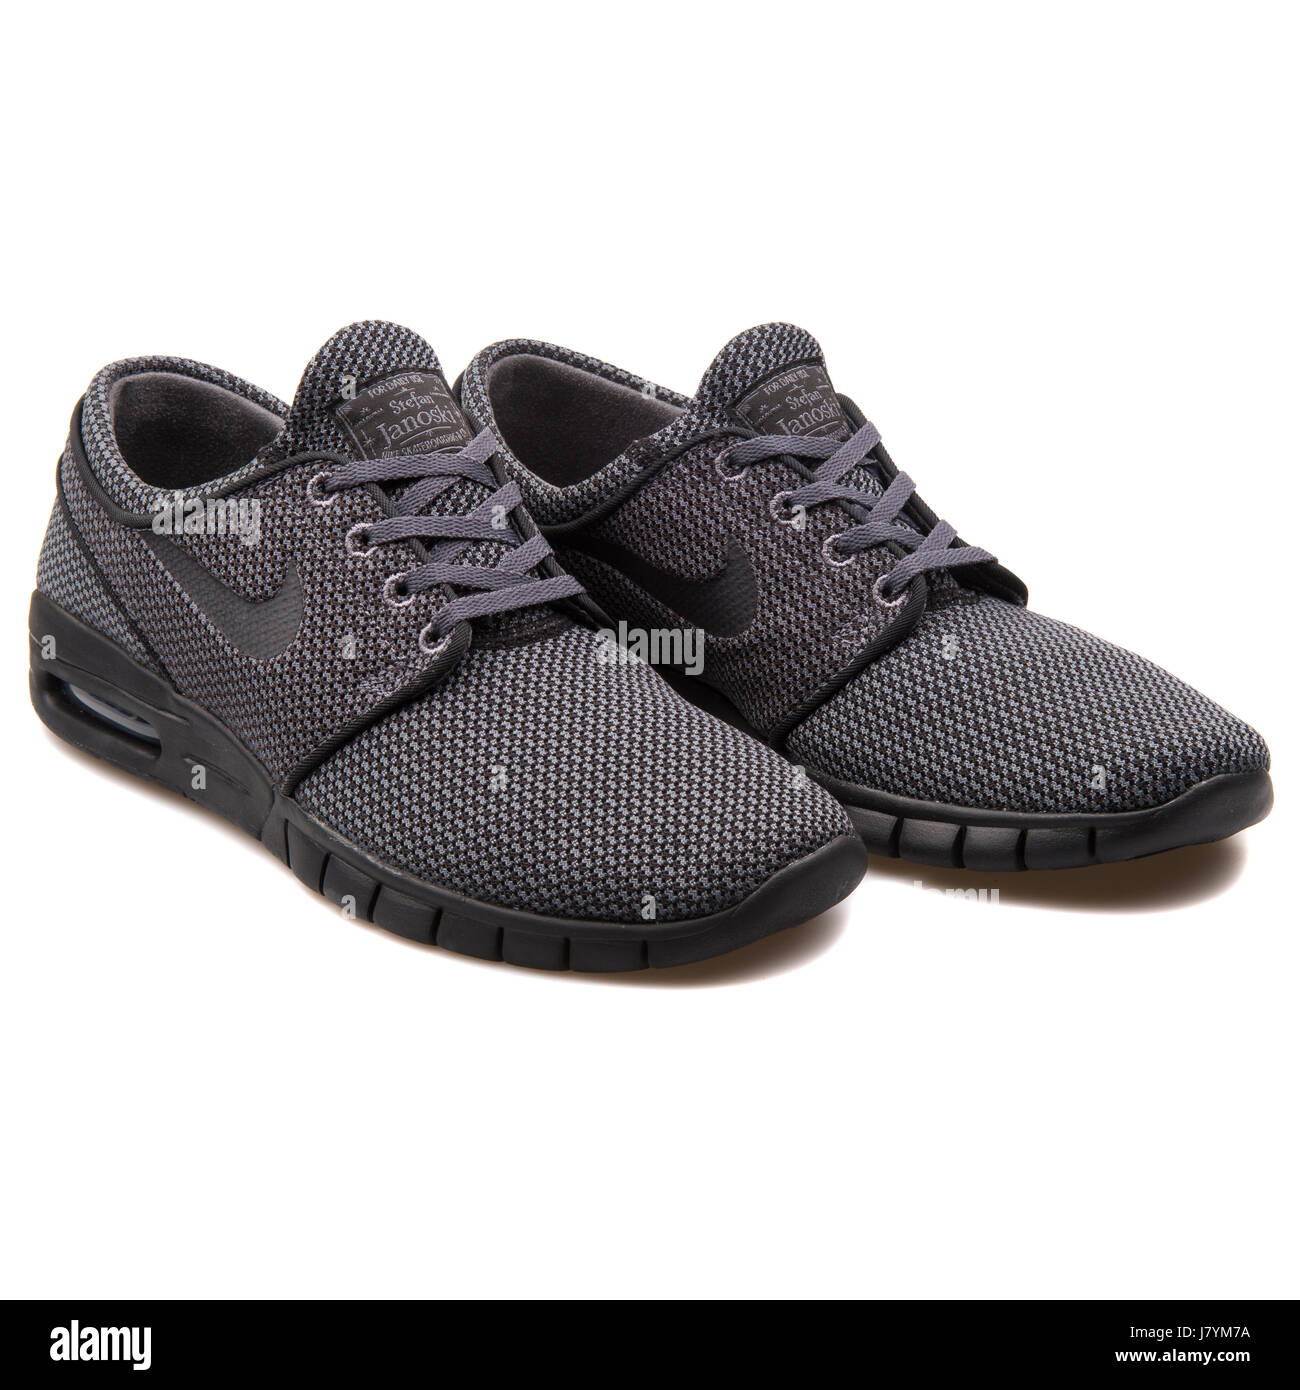 Nike Stefan Janoski Max Black Men's Skateboard Sneakers - 631303-006 Stockfoto